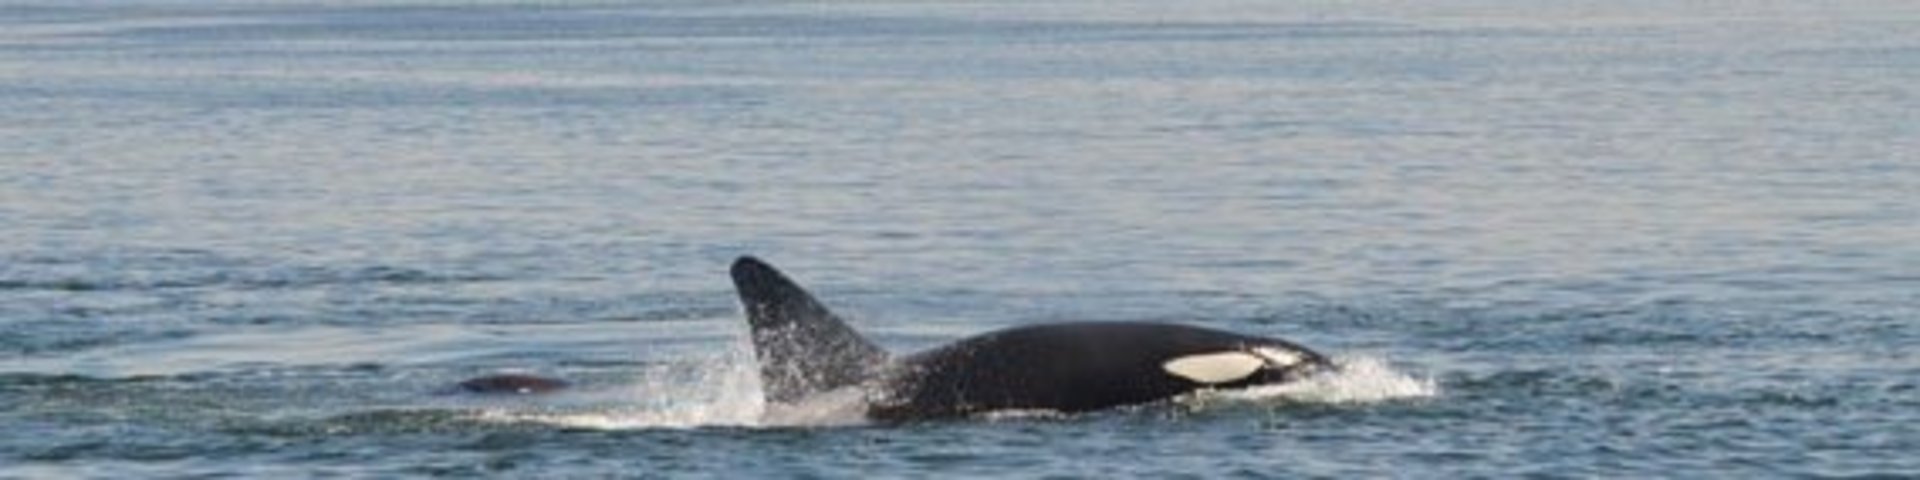 Orca vor der Küste Kanadas